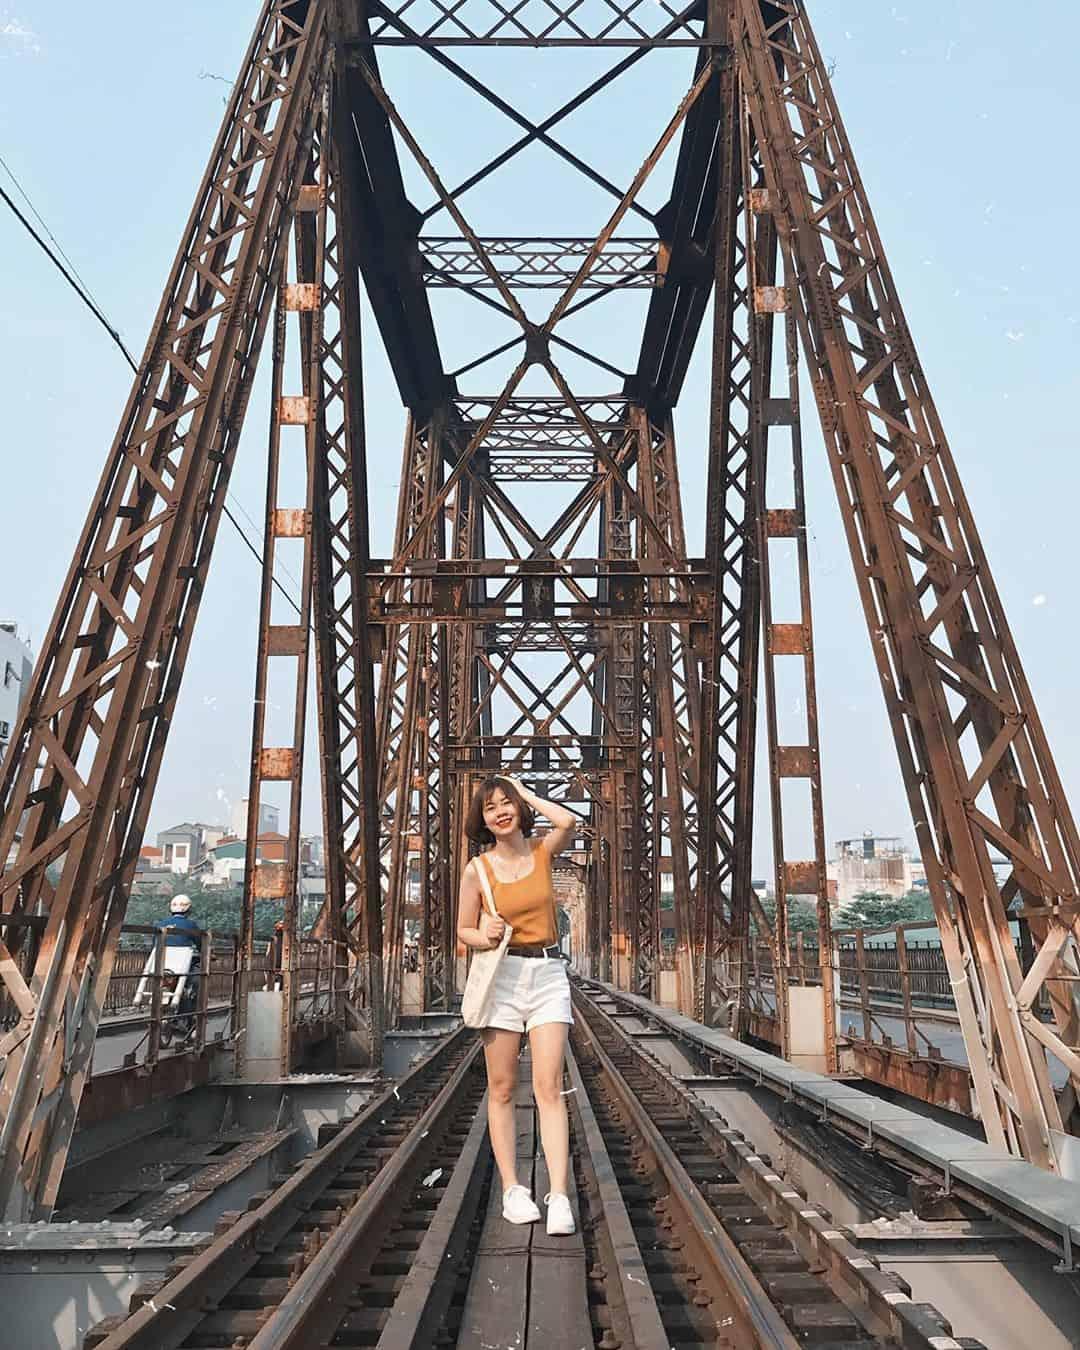 Cầu Long Biên mang vẻ đẹp cổ kính. Ảnh: @phuongnt93